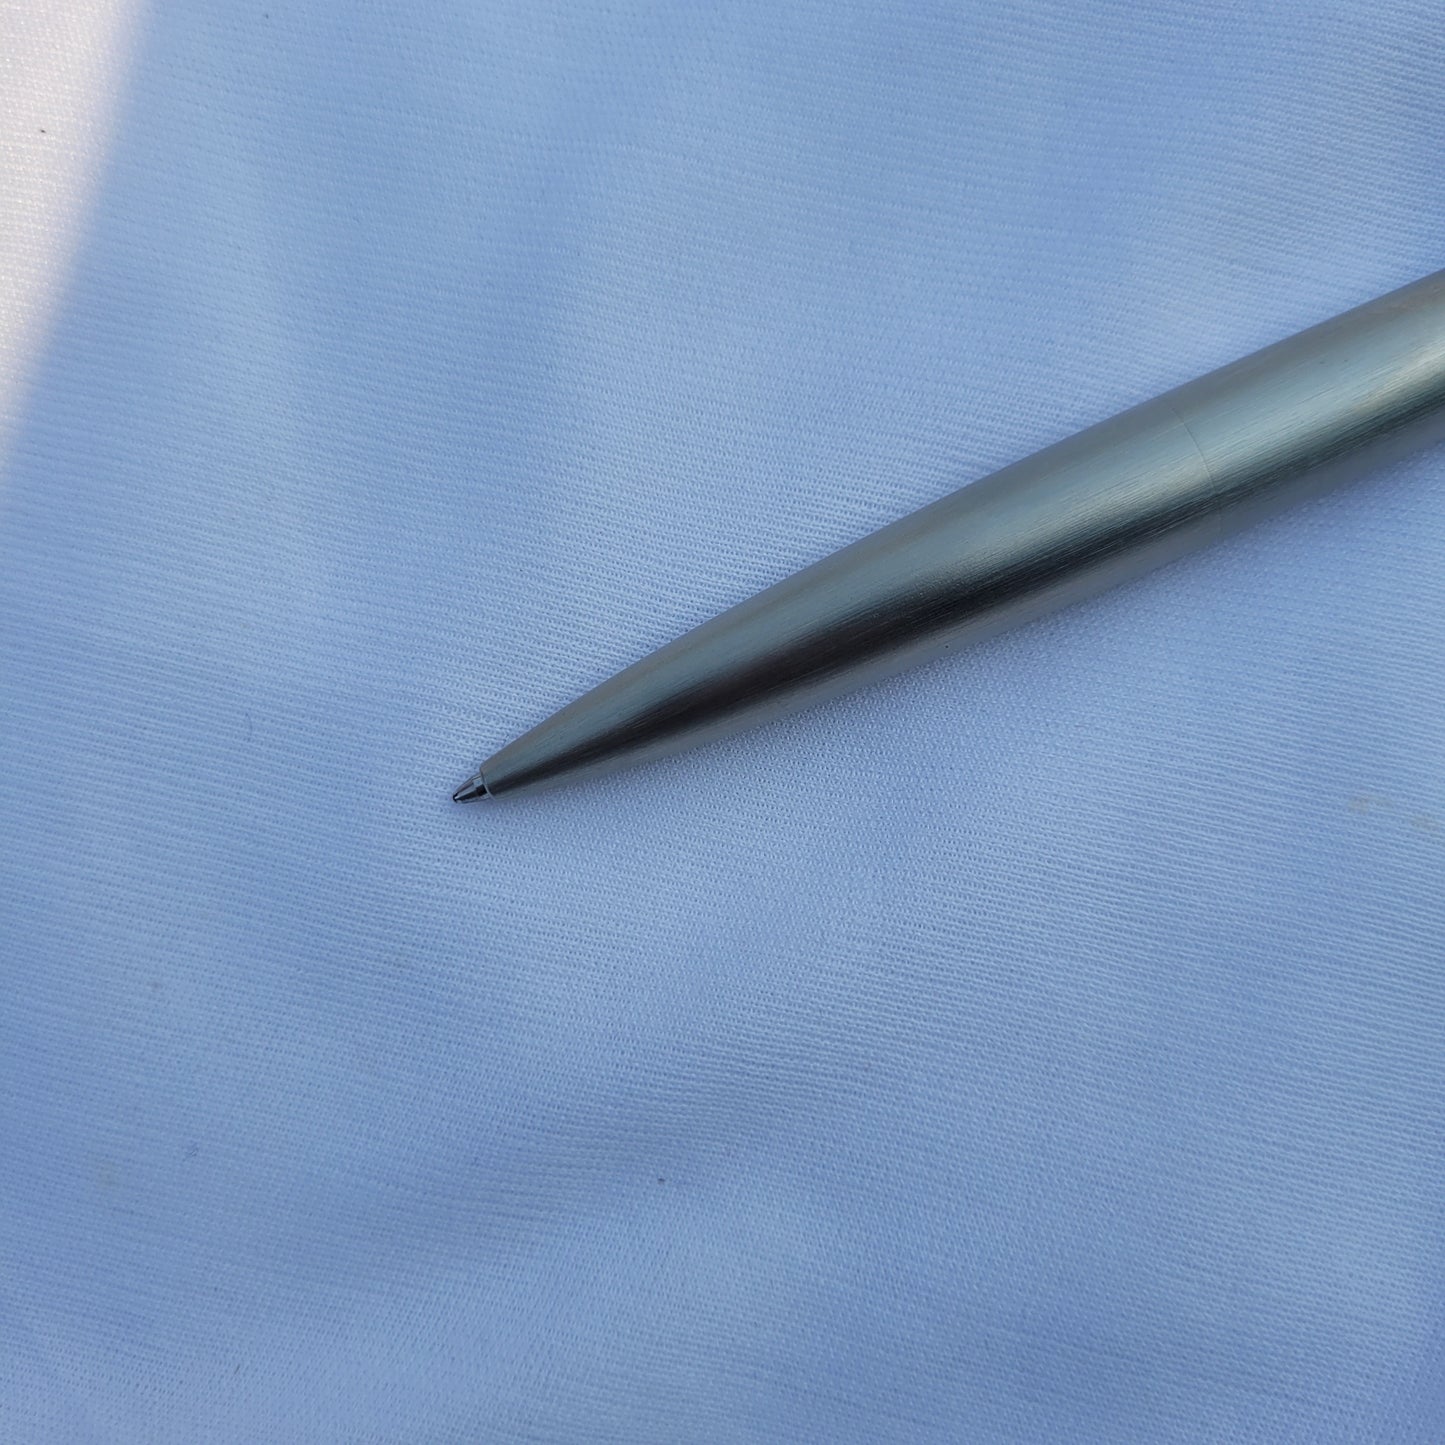 Lamy 2000 Ballpoint Pen Stainless Steel